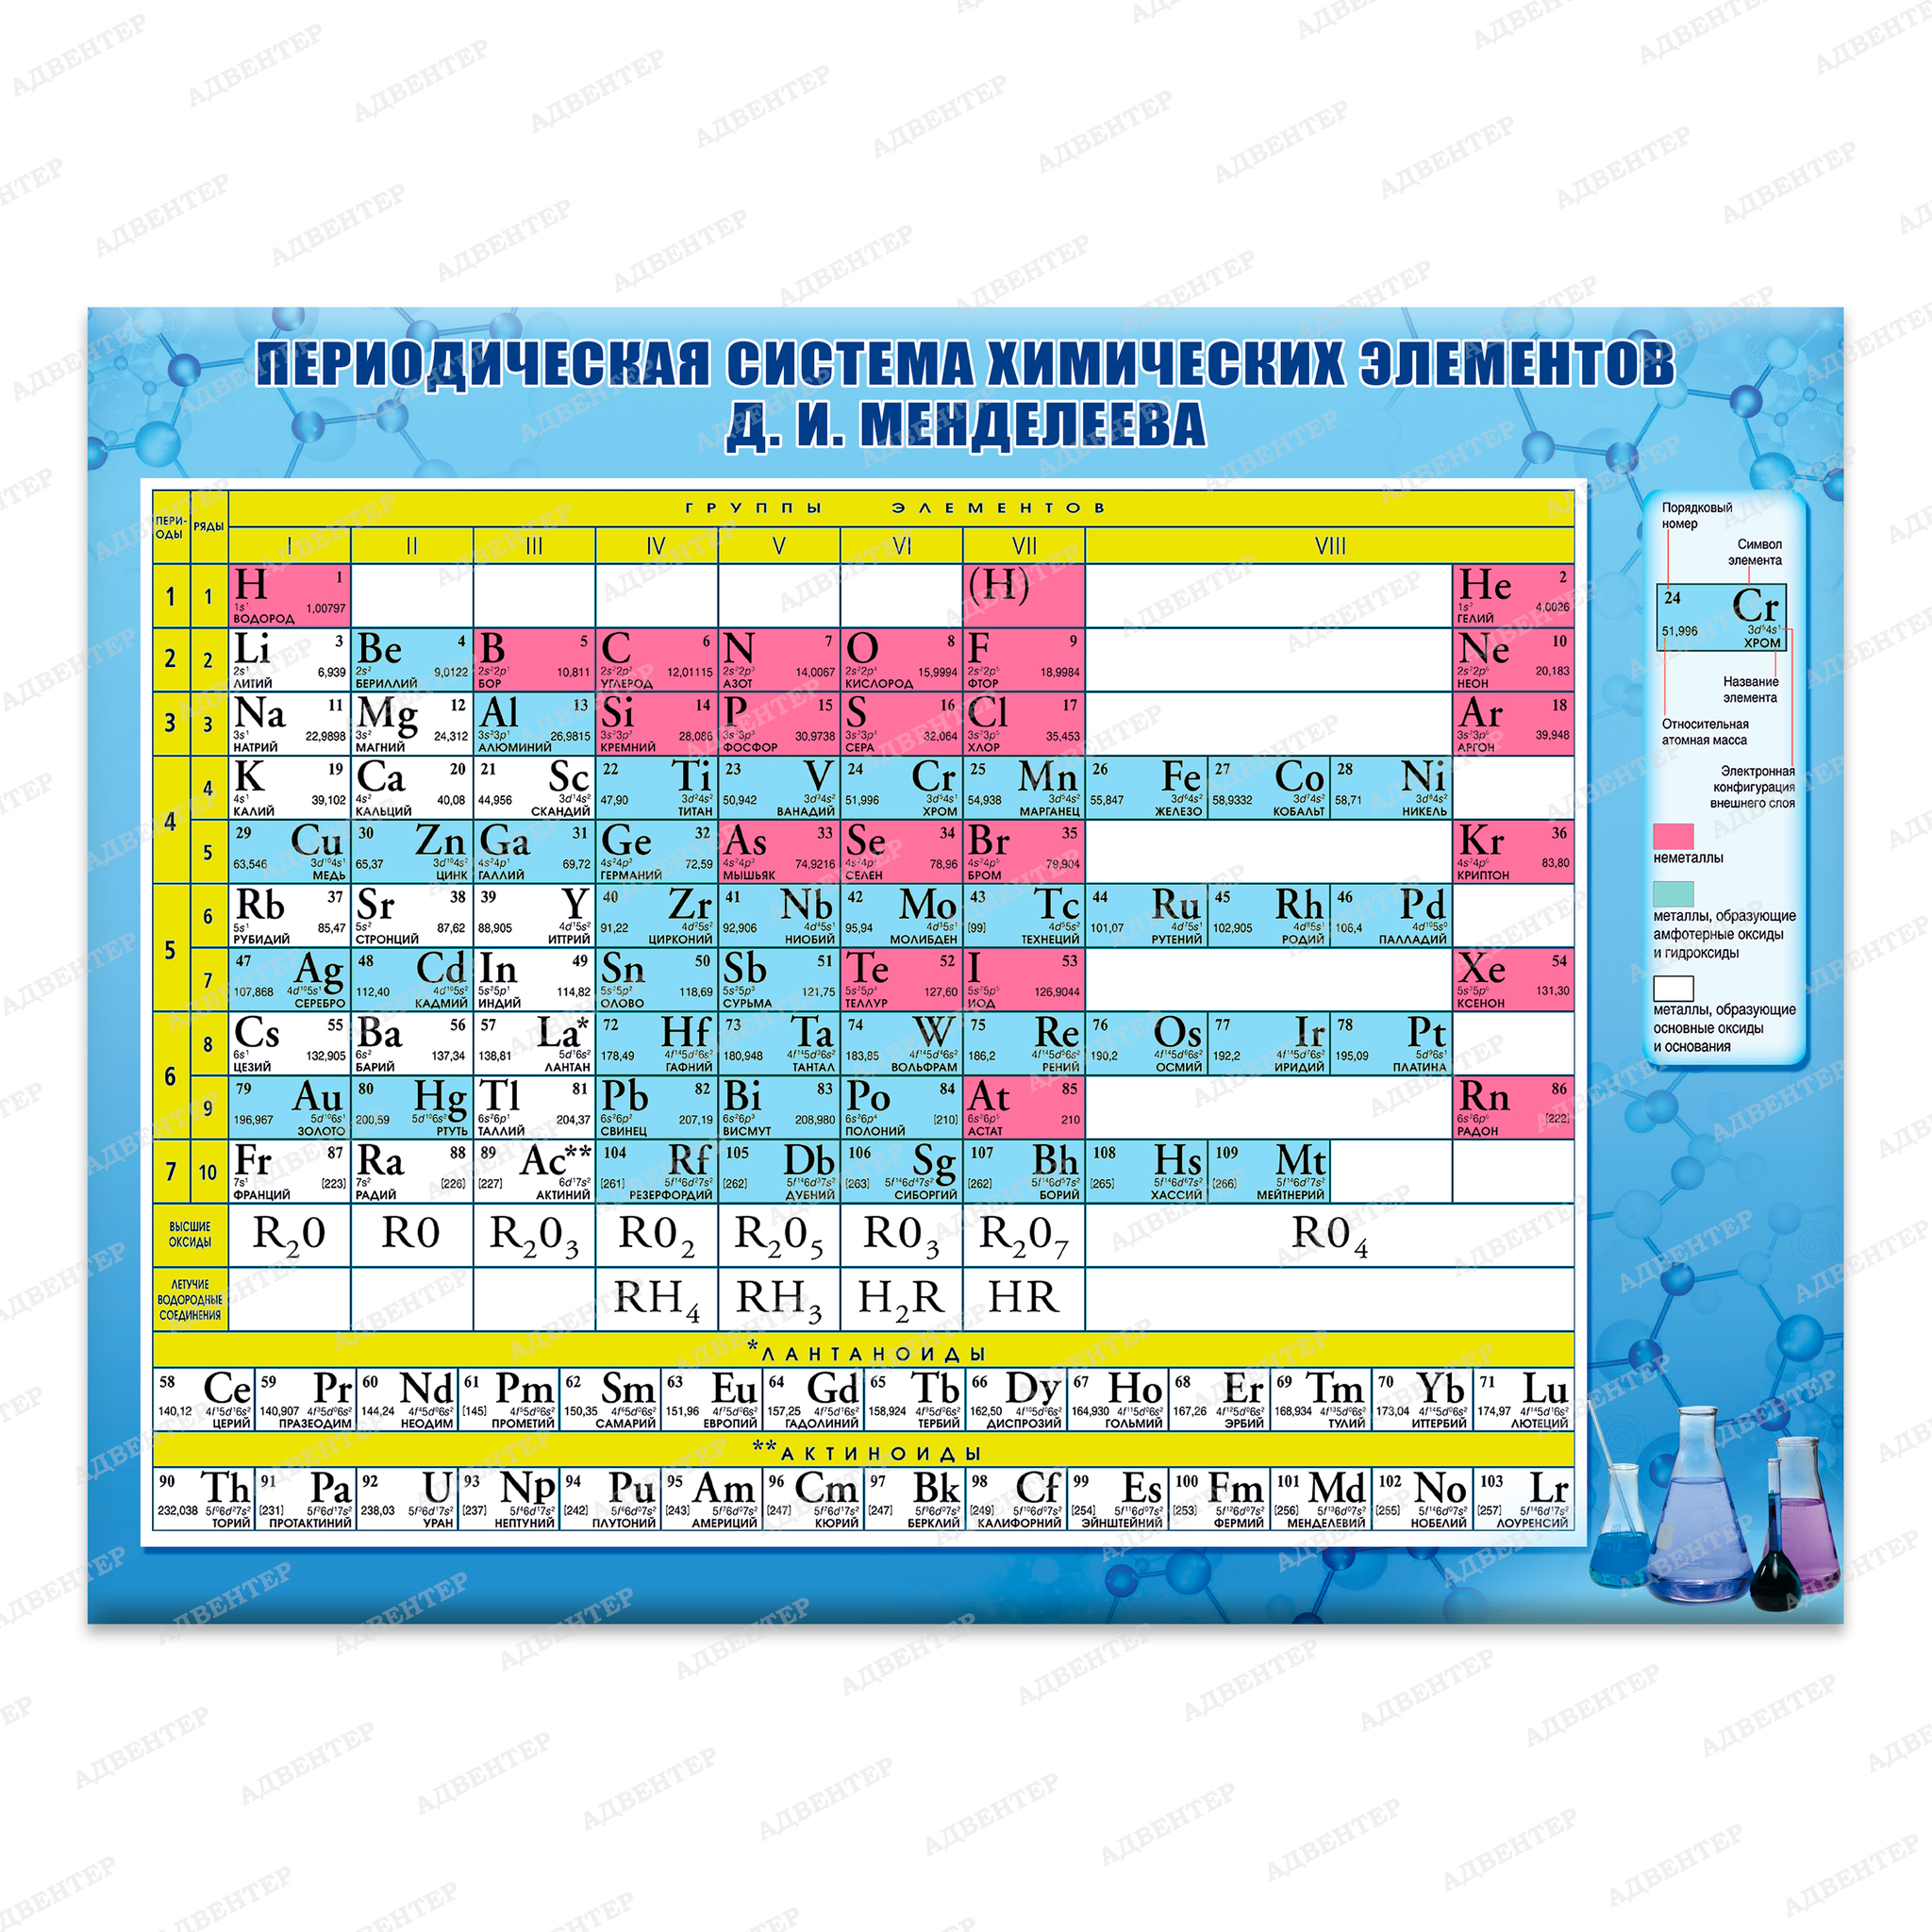 Химический элемент имеющий обозначение. Таблица по химии периодическая система химических элементов. Периодическая система химических элементов Менделеева химия 8 класс. Периодическая таблица химических элементов Менделеева 9 класс. Таблица Менделеева по химии 8 класс химические элементы.